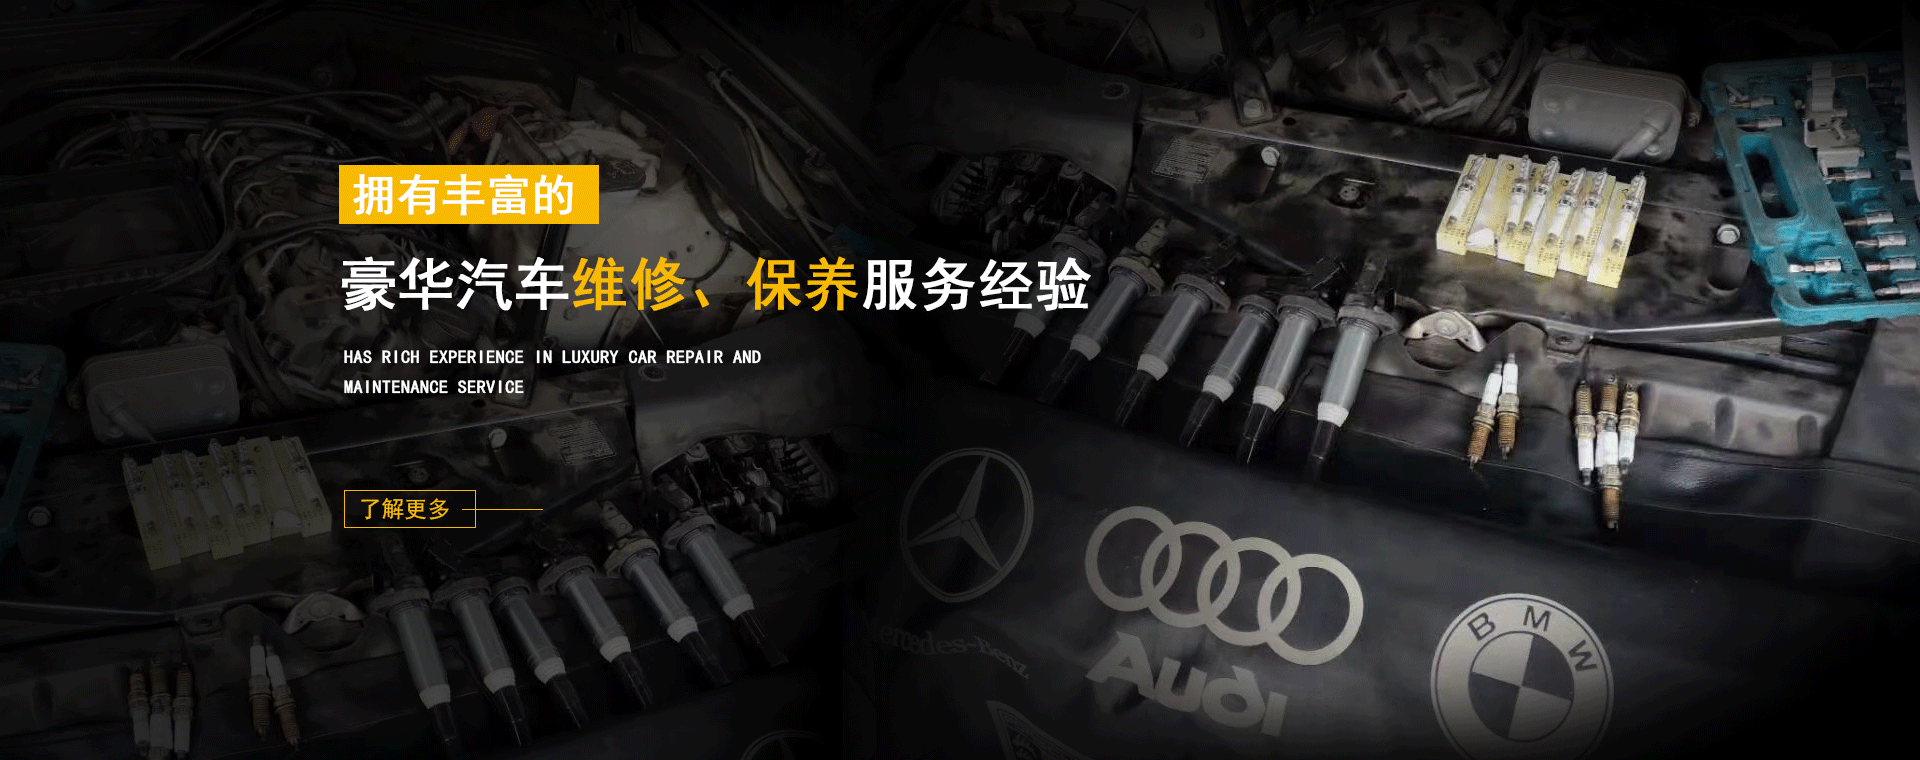 重庆金钣手汽车维修有限公司发动机维修